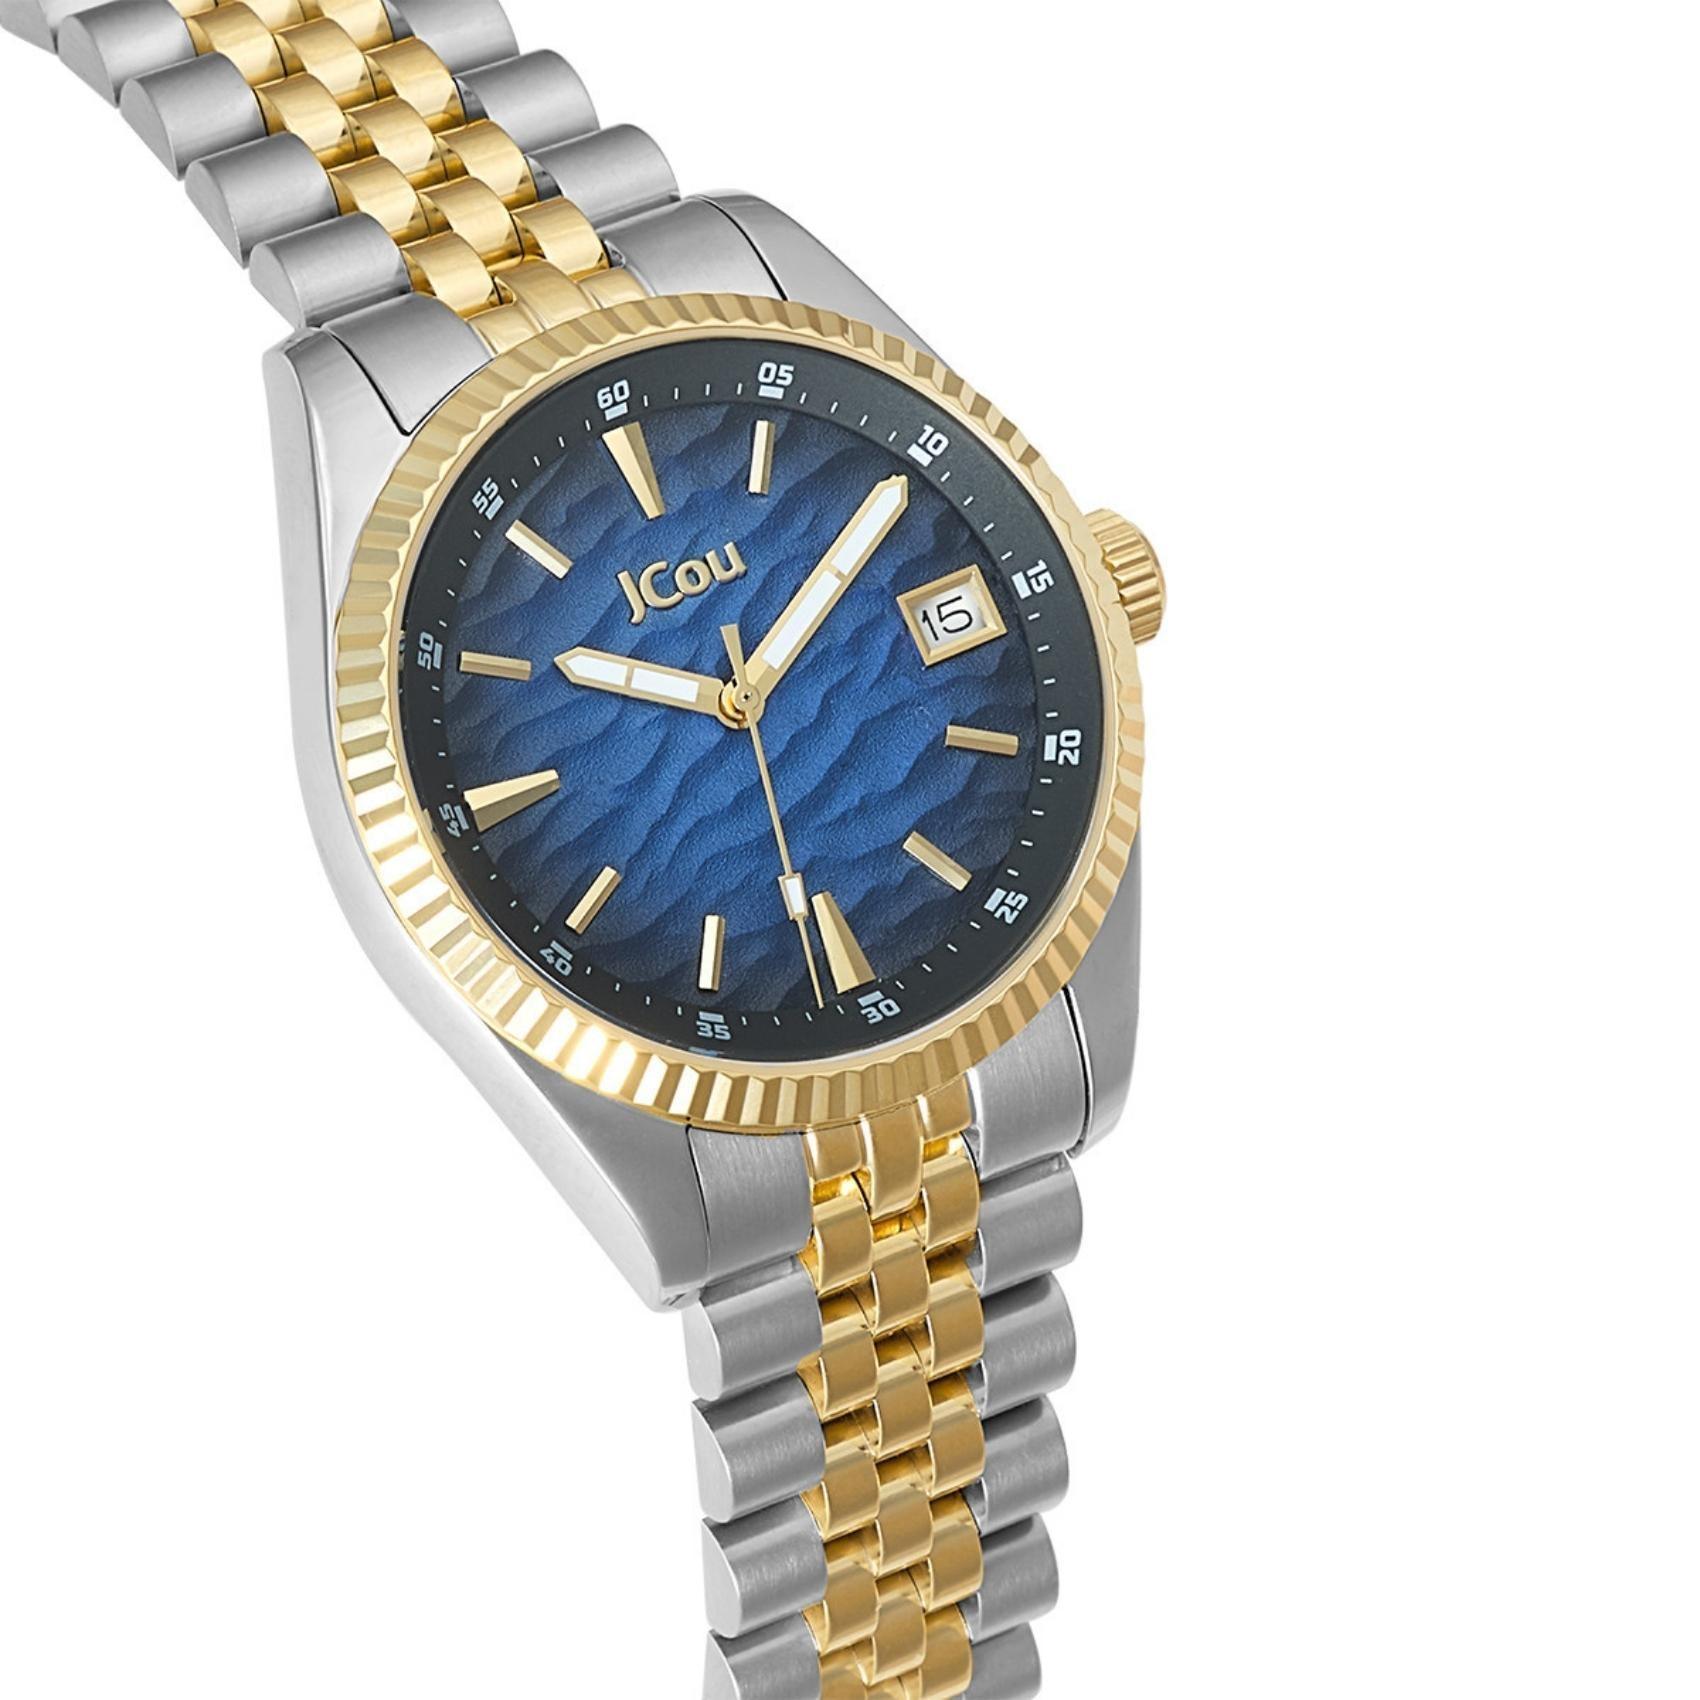 Γυναικέιο ρολόι JCOU Queen's Land JU19071-2 με δίχρωμο ατσάλινο μπρασελέ σε ασημί-χρυσό χρώμα και μπλε καντράν διαμέτρου 36mm με ημερομηνία.